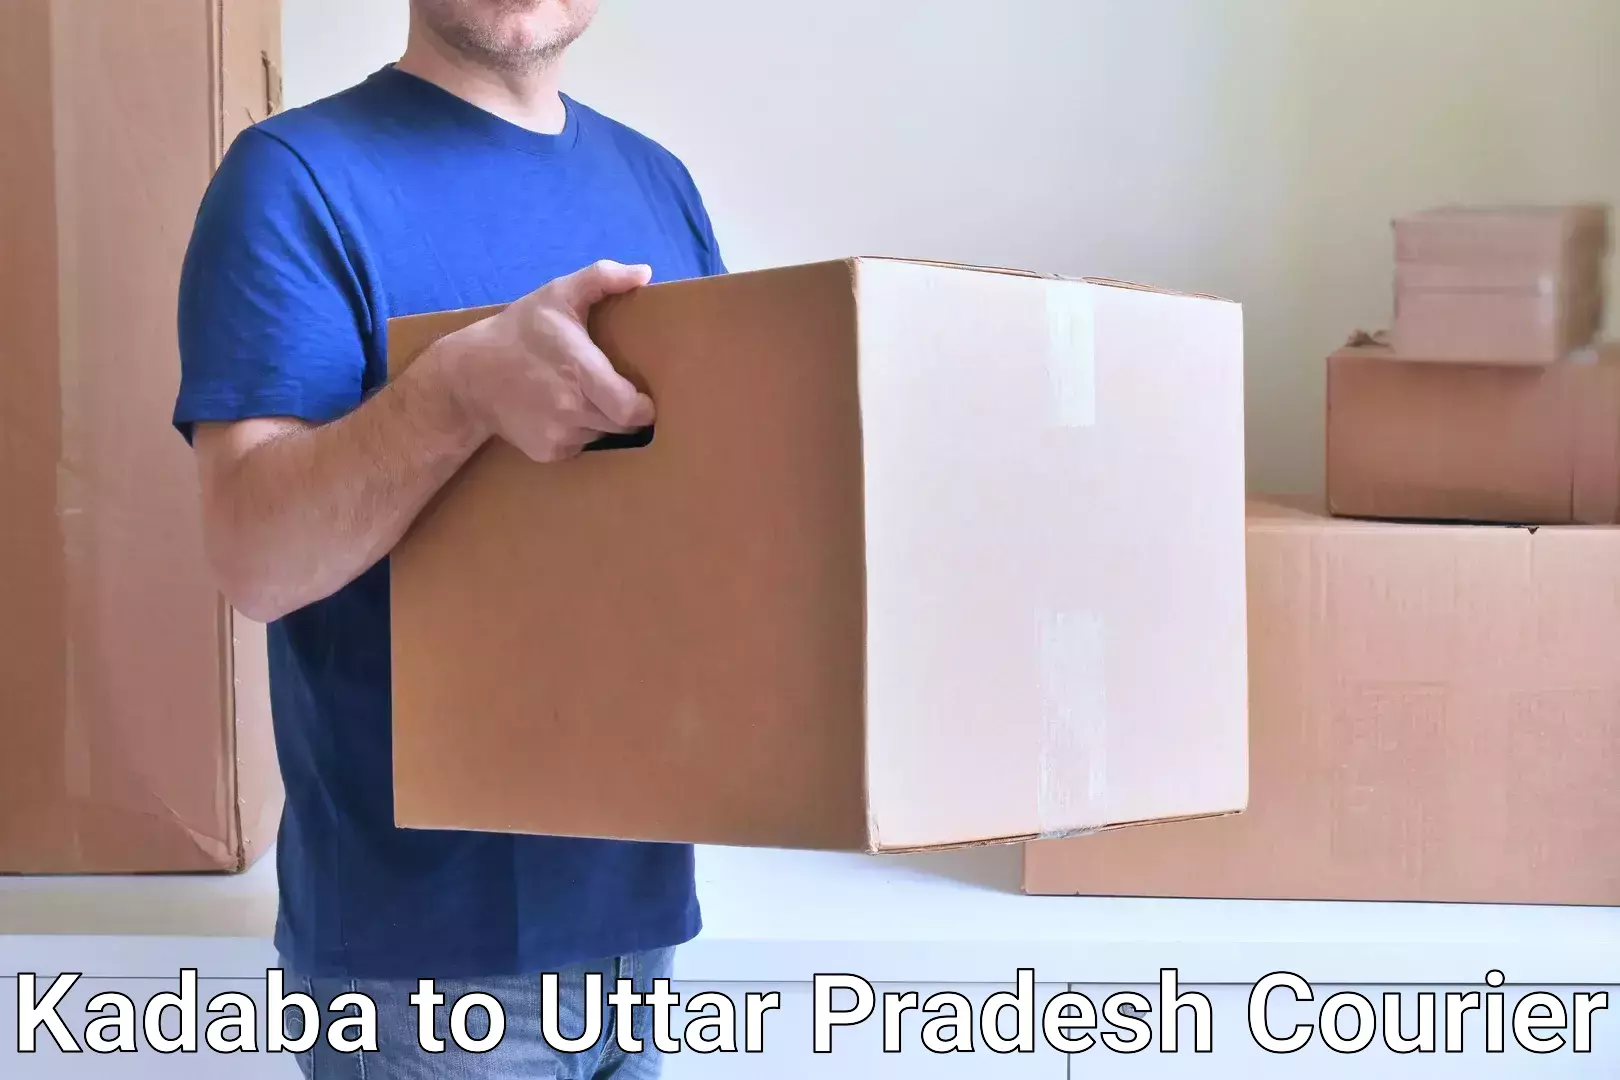 Digital courier platforms Kadaba to Uttar Pradesh